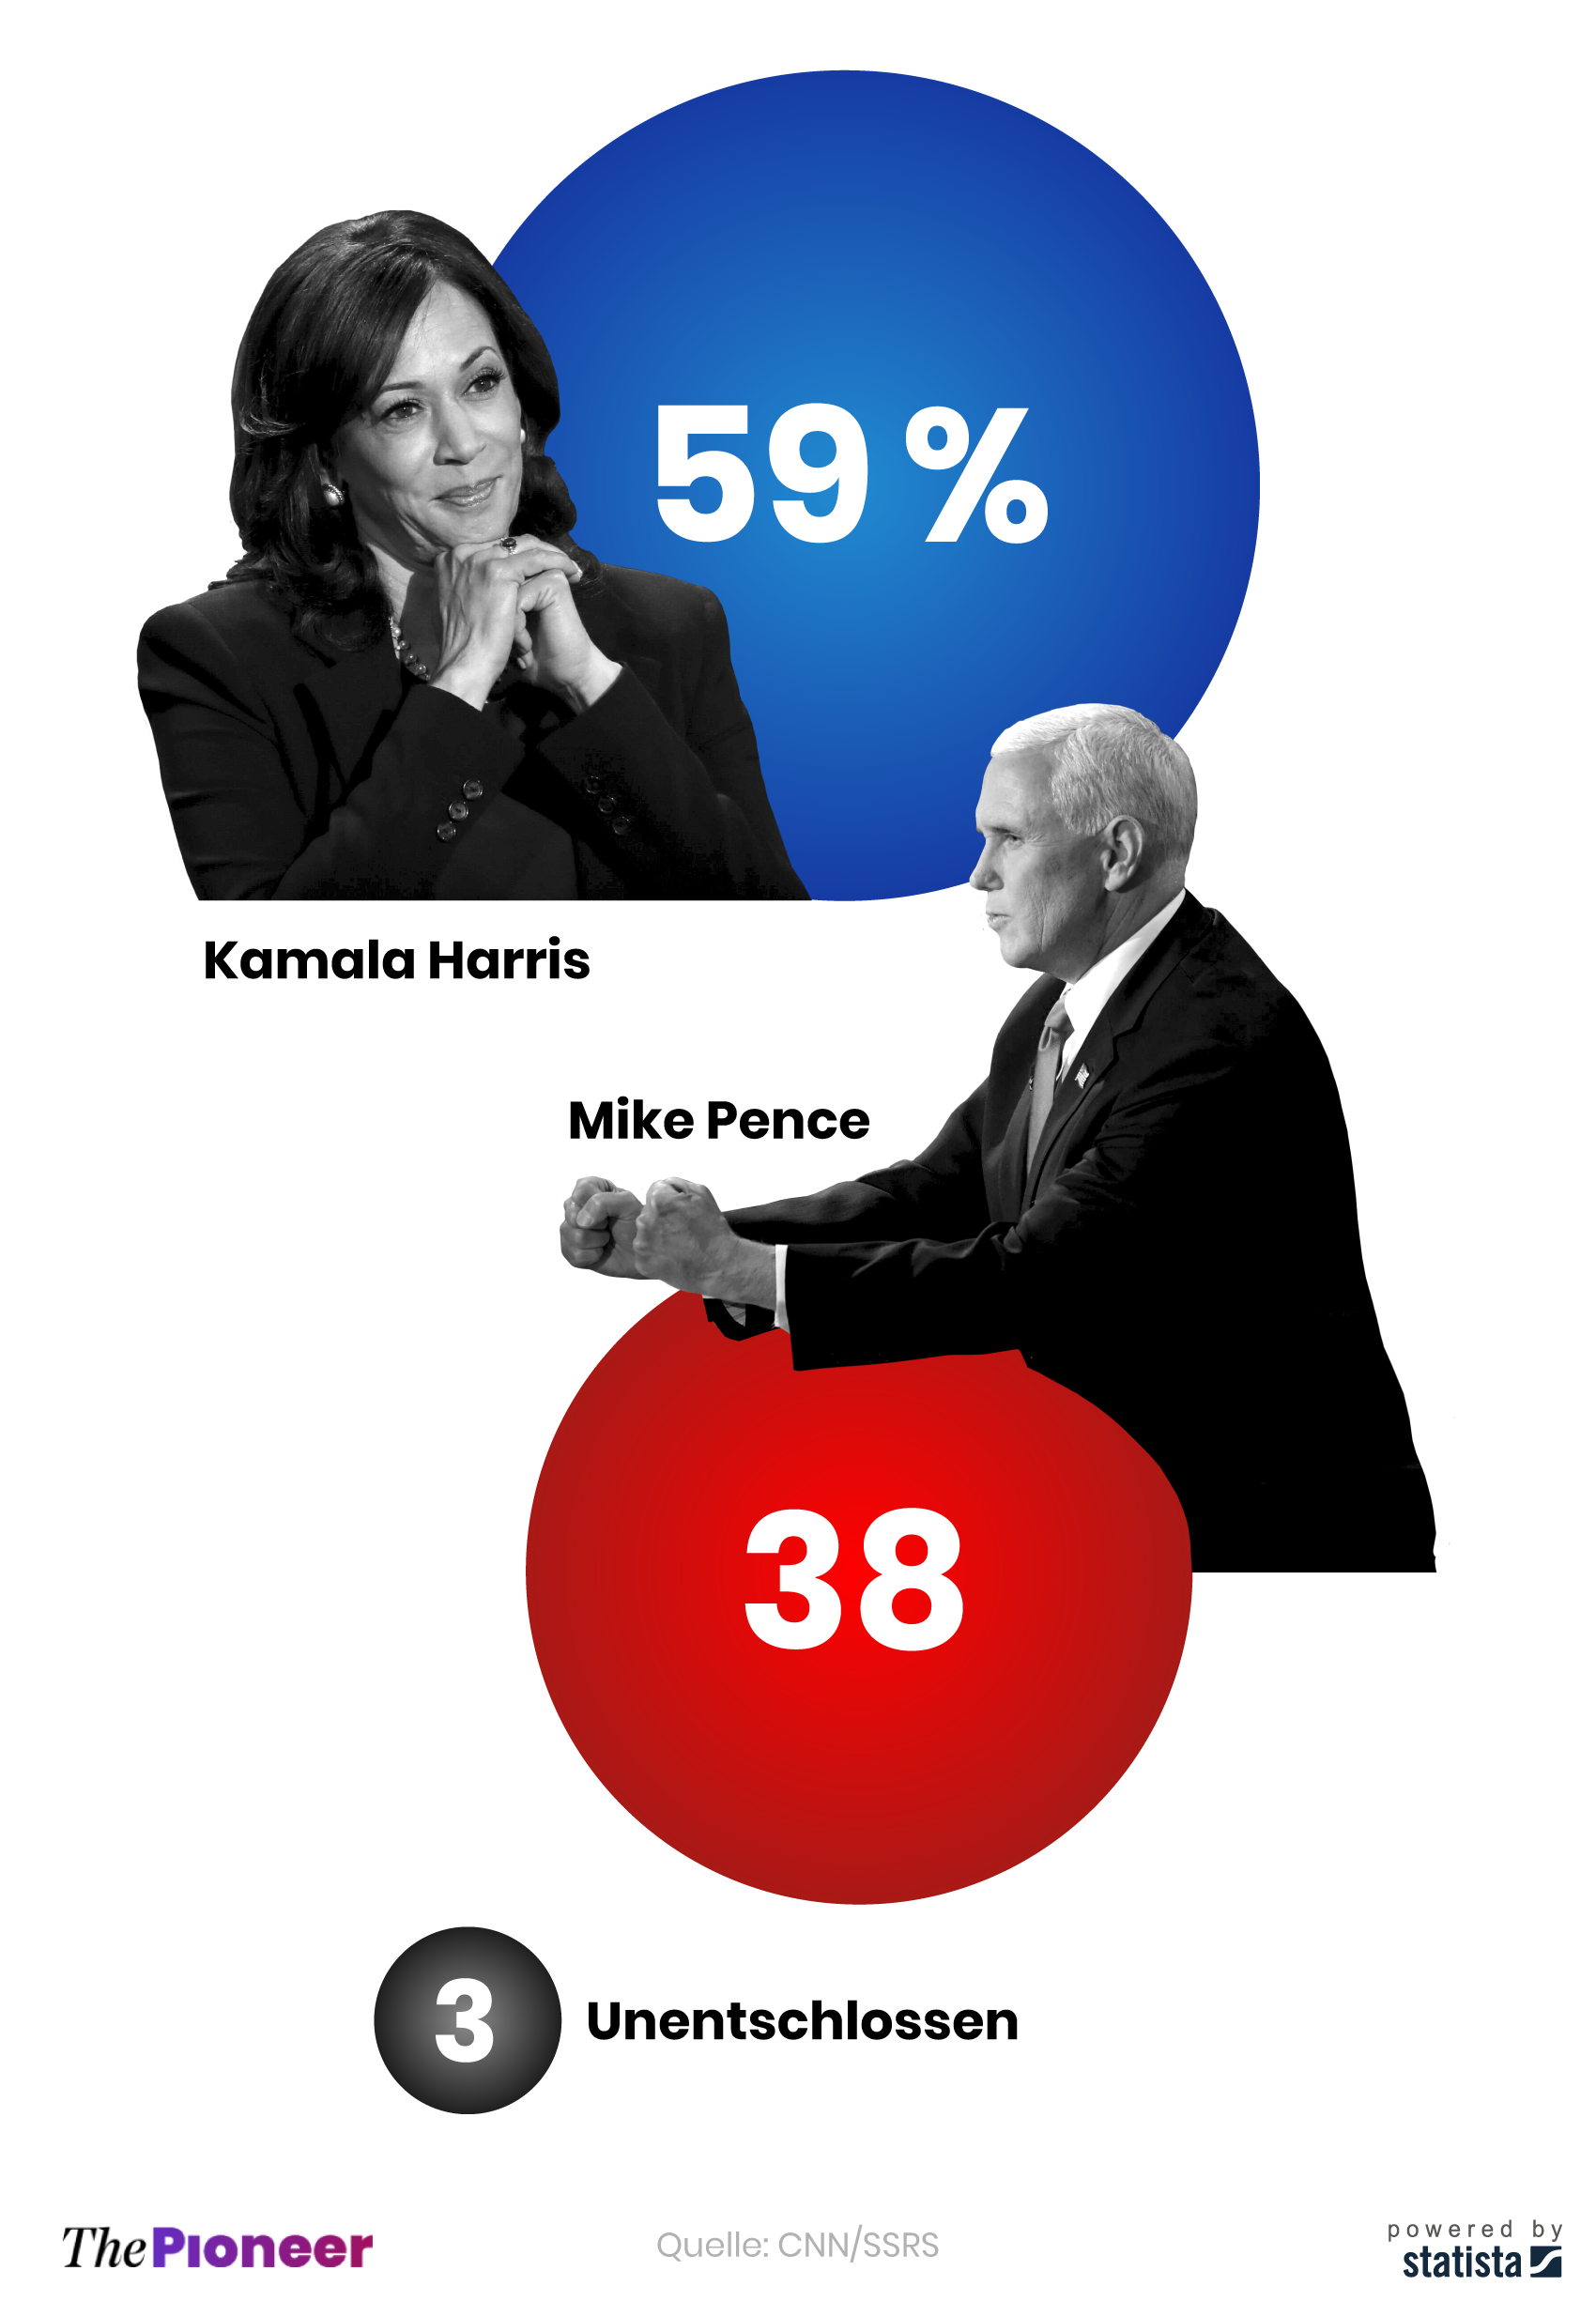 Umfrage über Ausgang der Pence-Harris-Debatte, in Prozent